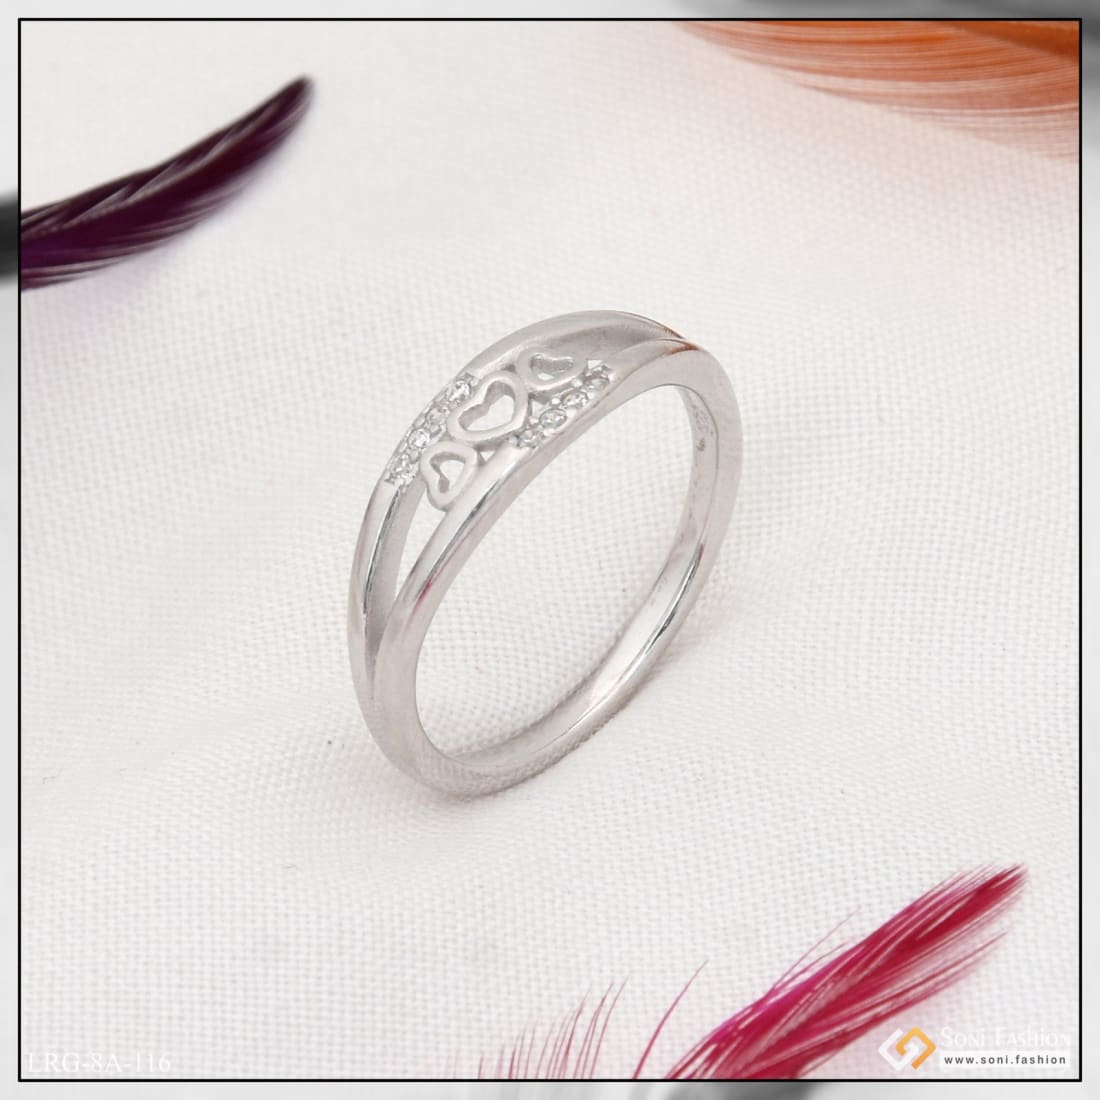 925 Silver Zirconia Ink Design Couple Rings – VOYLLA